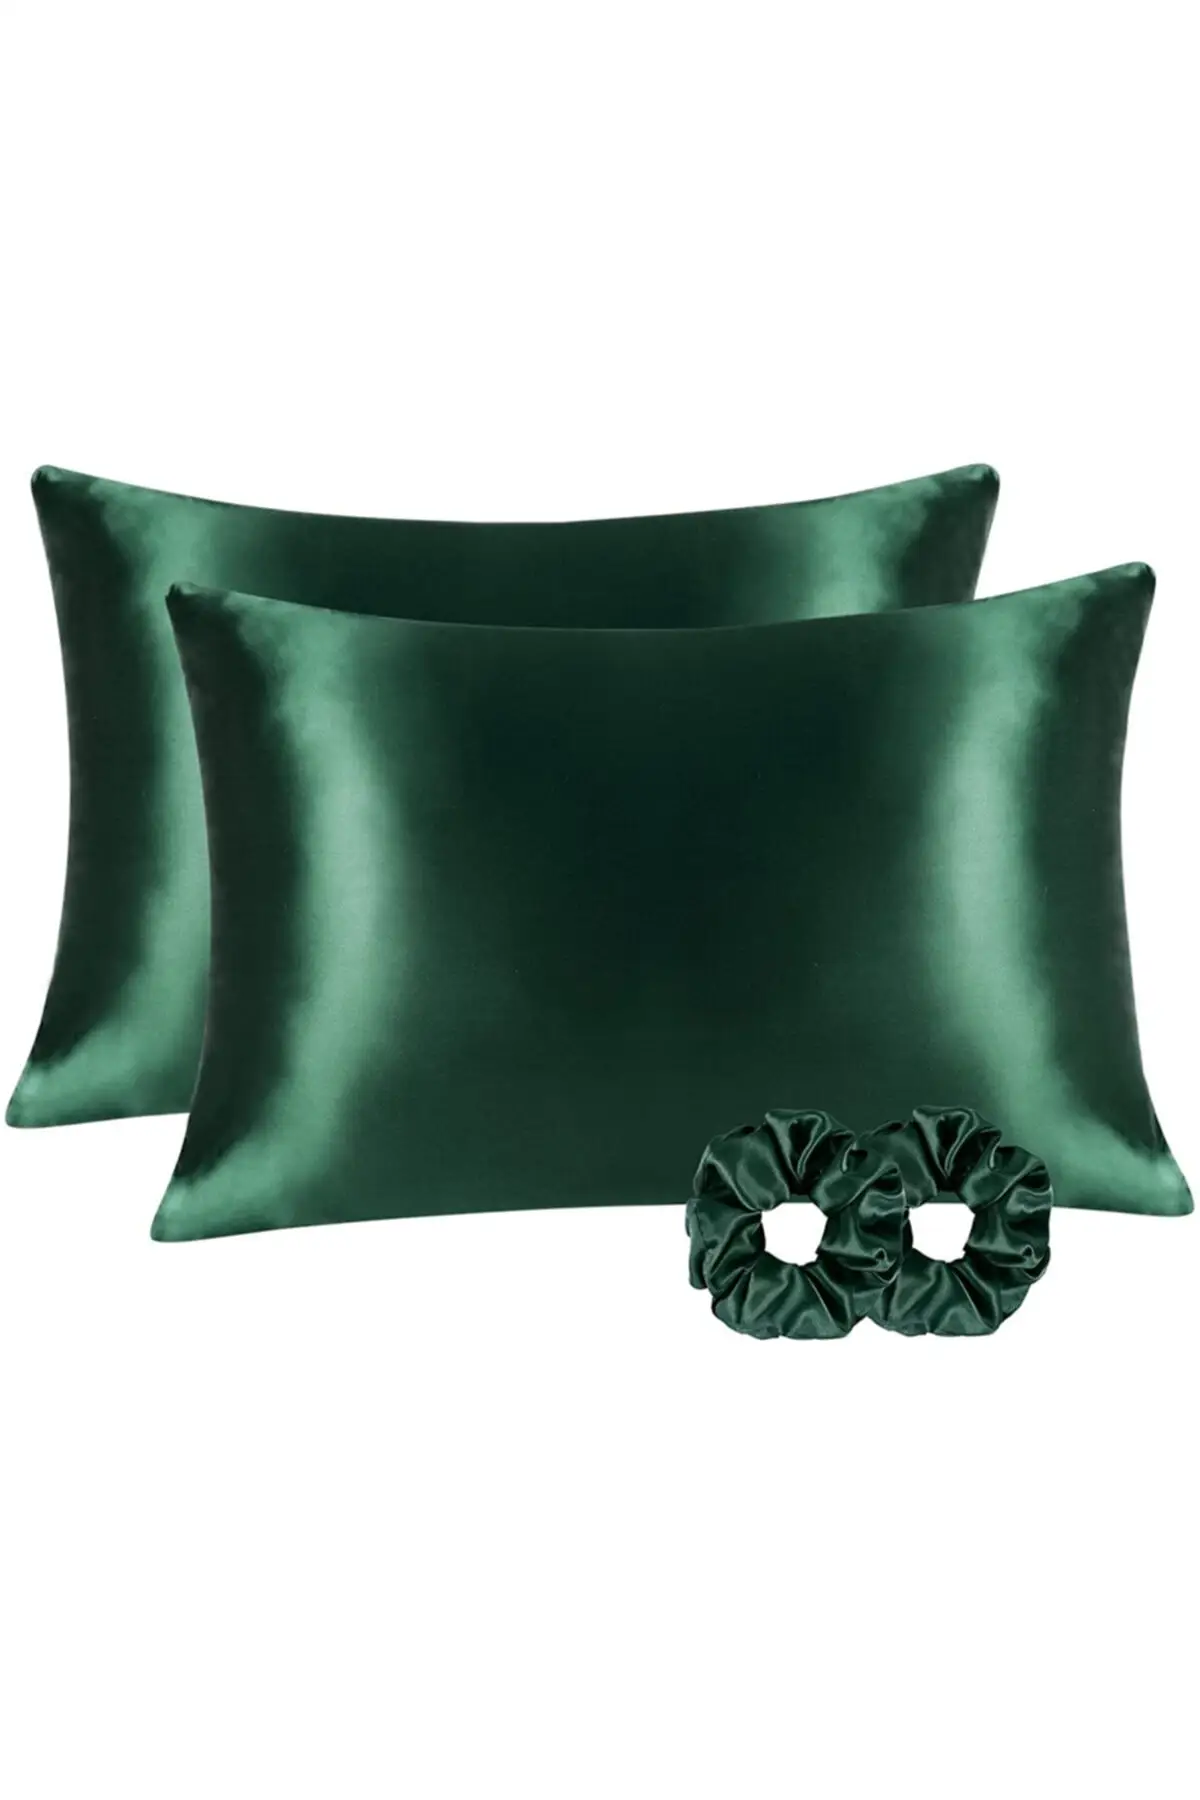 

100% Шелковая атласная подушка 50x70 см, 2 шт., подушка с пряжкой, темно-зеленая Подушка и подушка, текстиль для спальни, домашняя мебель